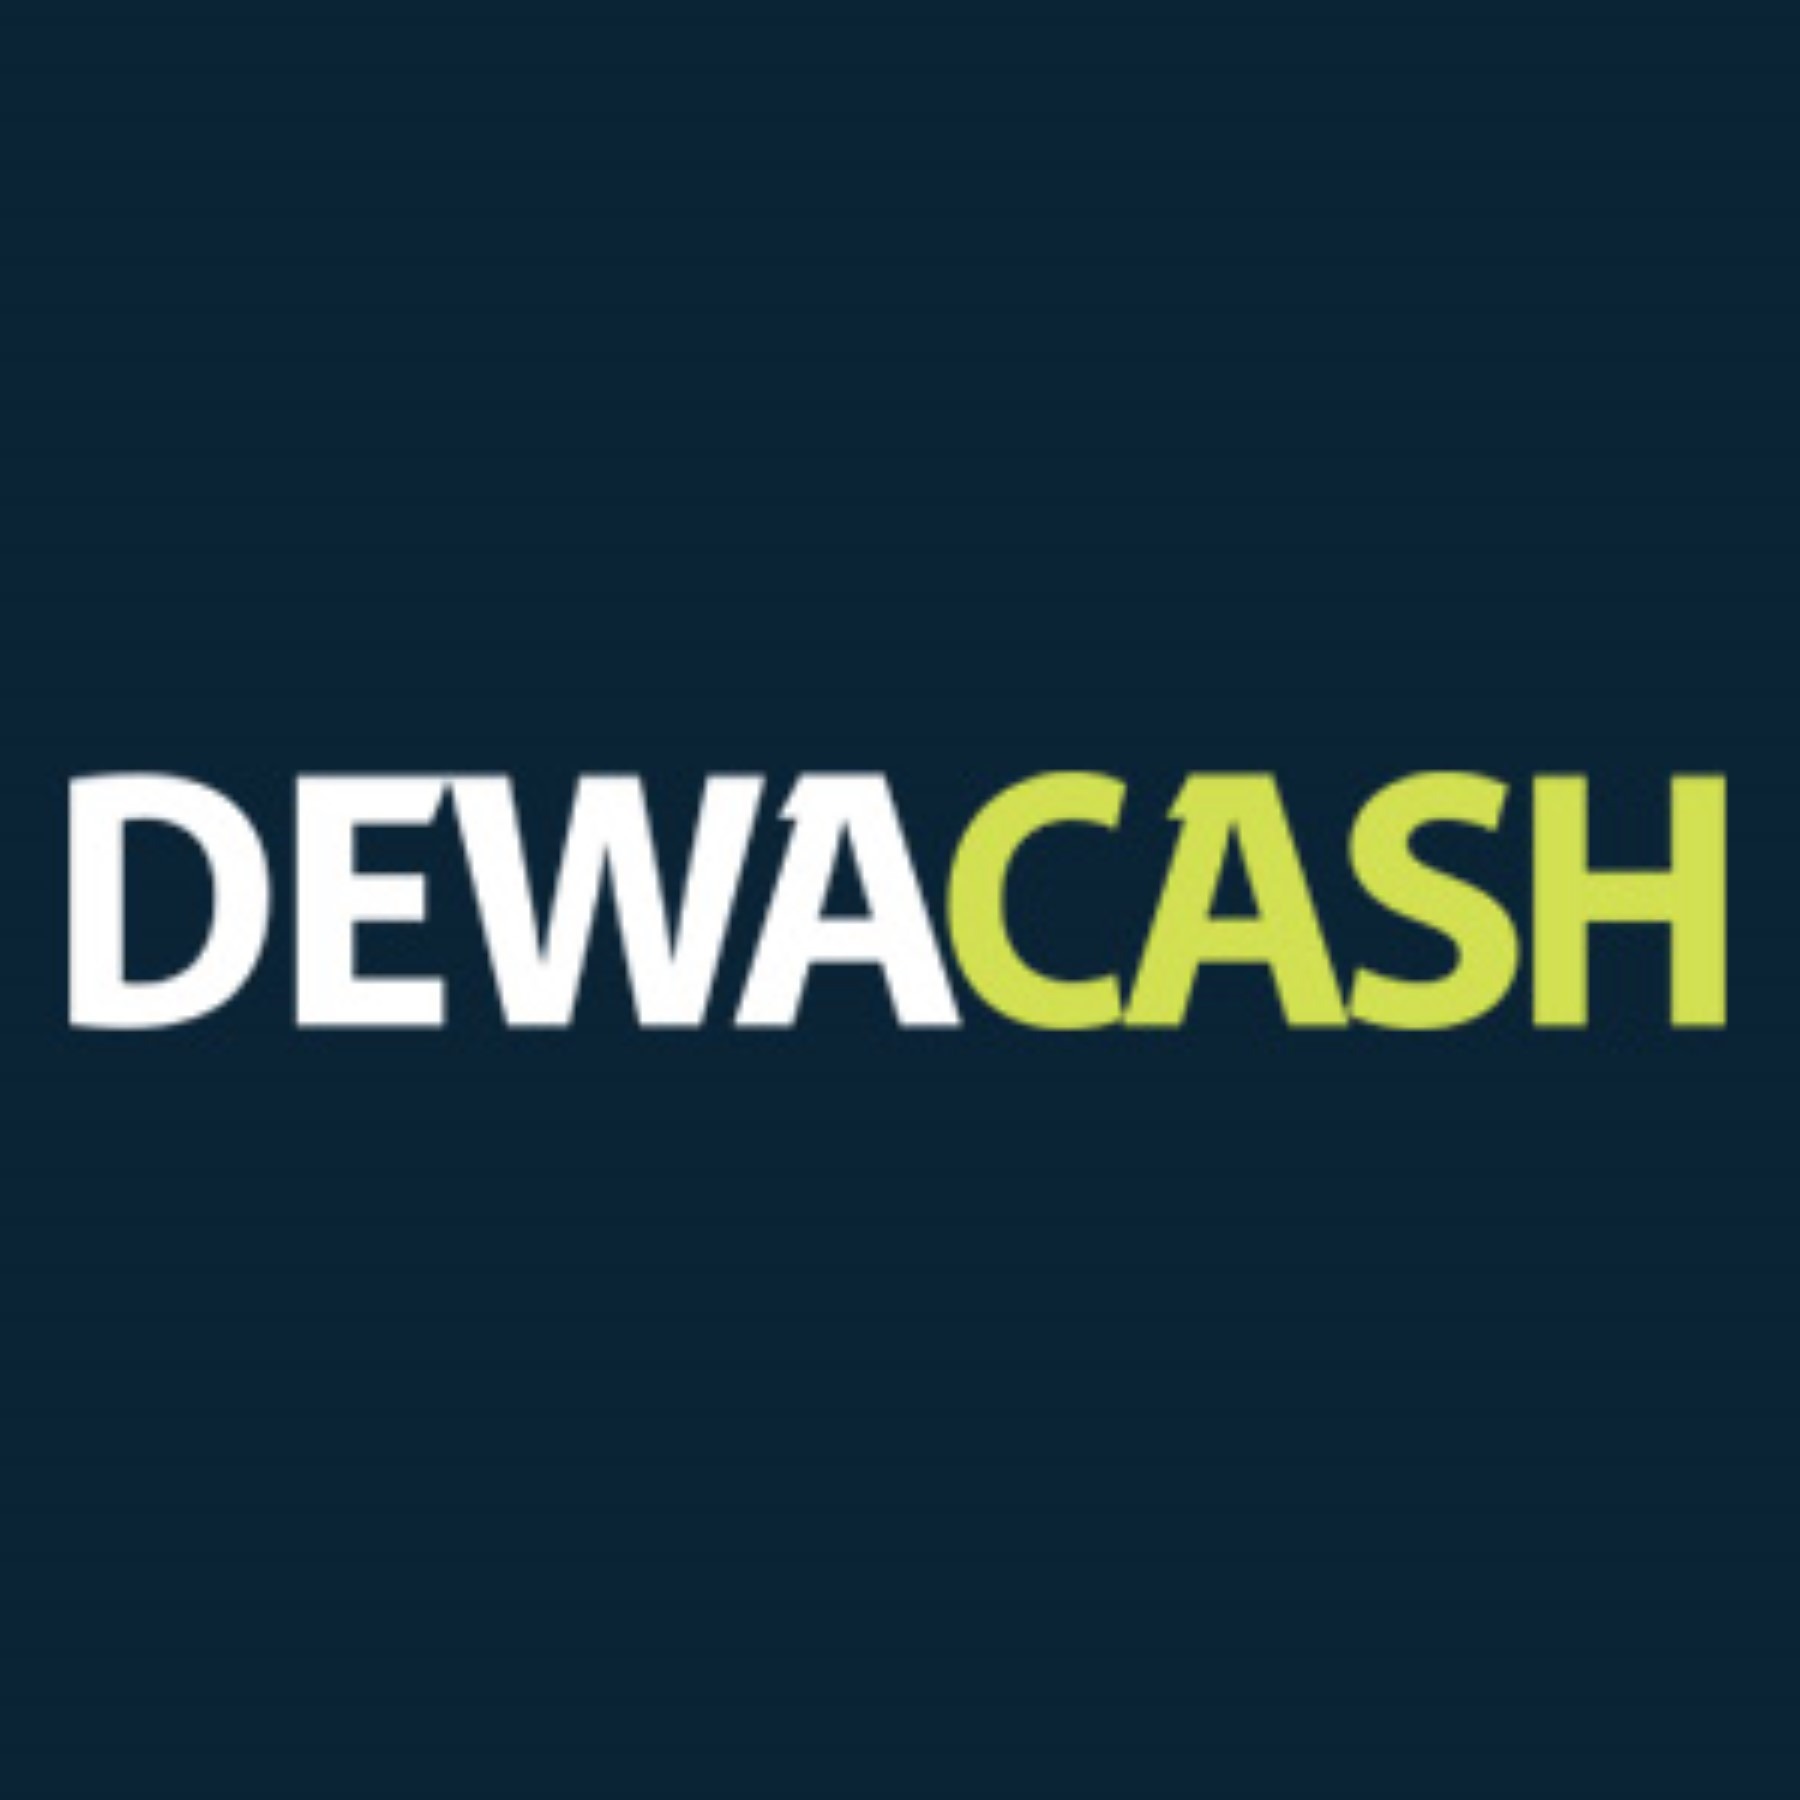 Dewacash